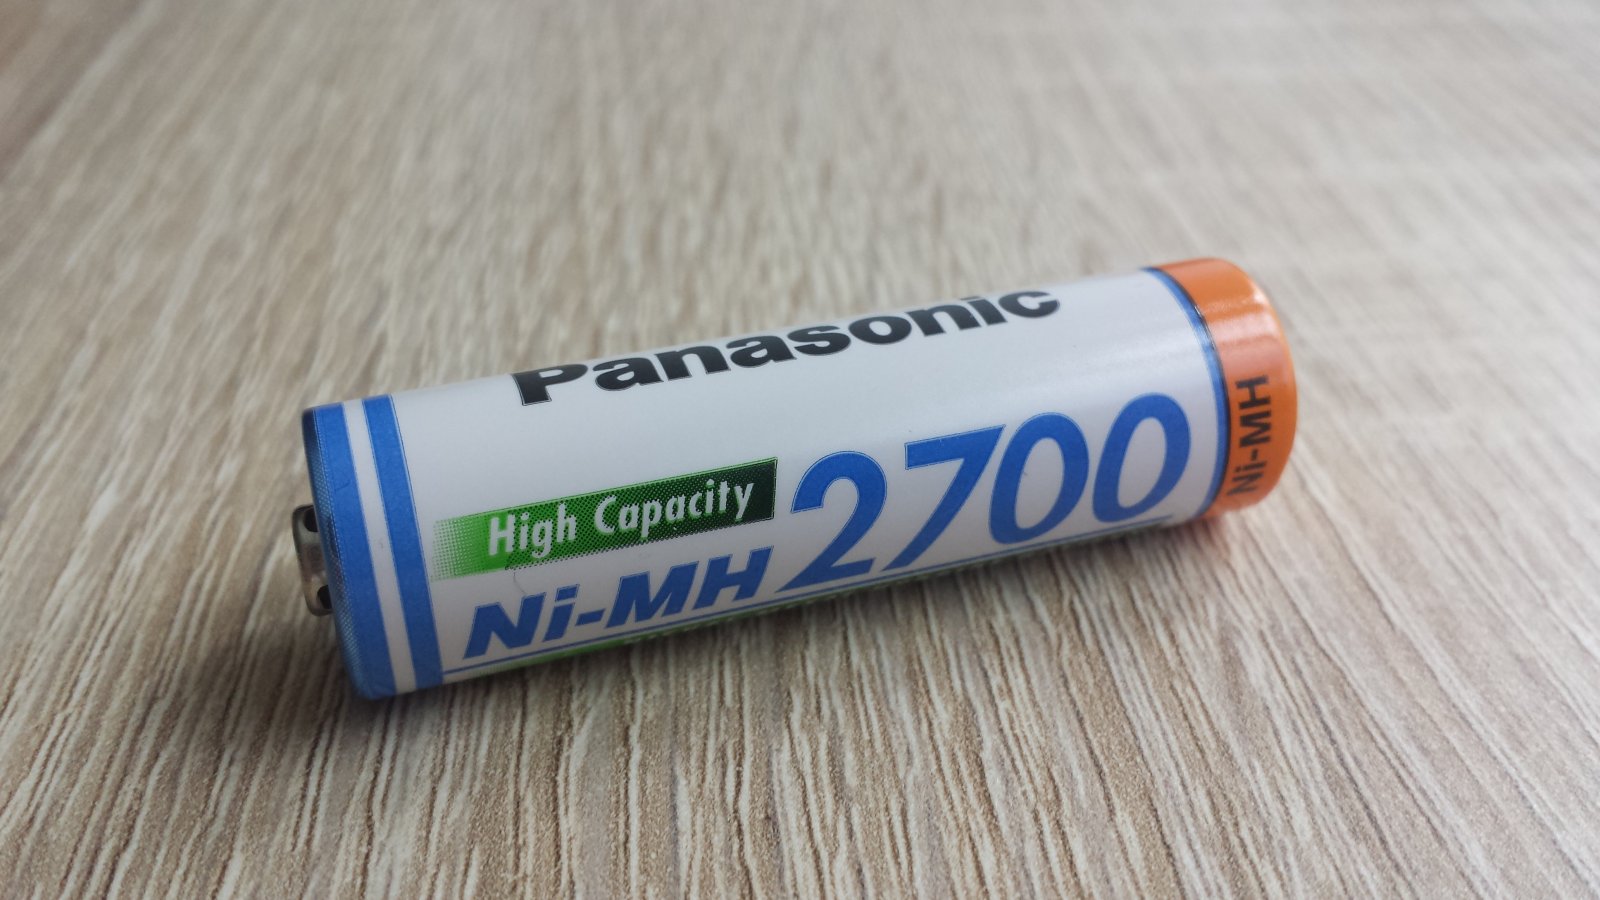 Panasonic Ni-MH 2700